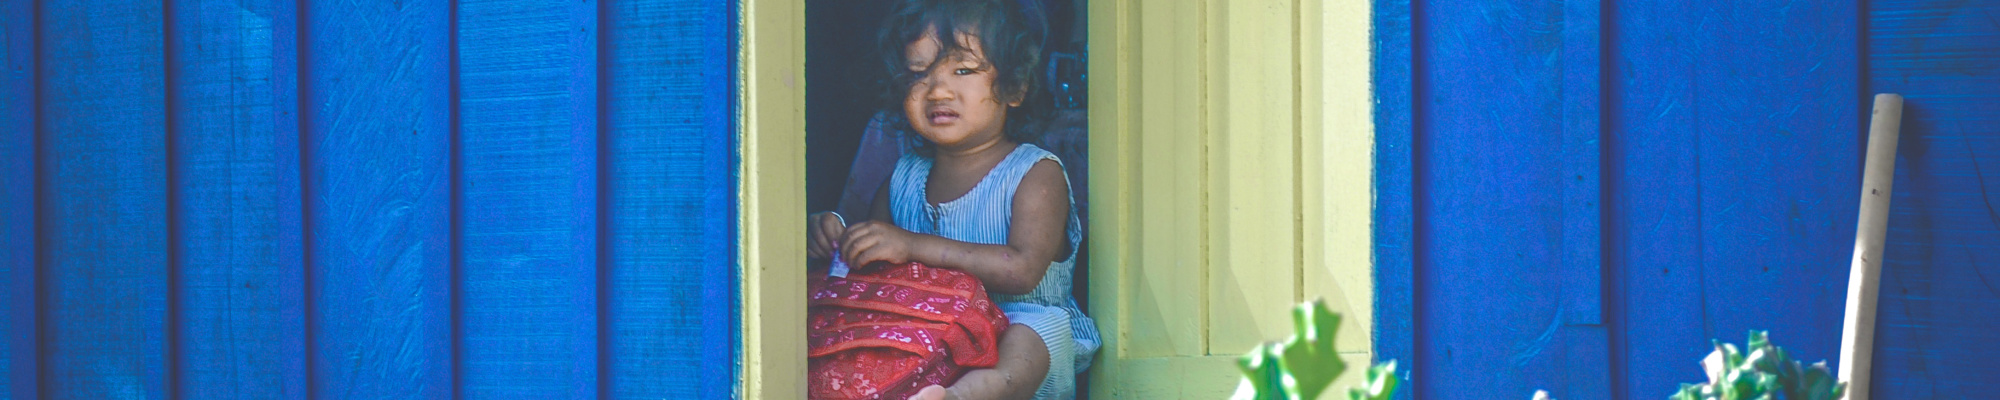 petite fille assise devant une porte jaune entre ouverte